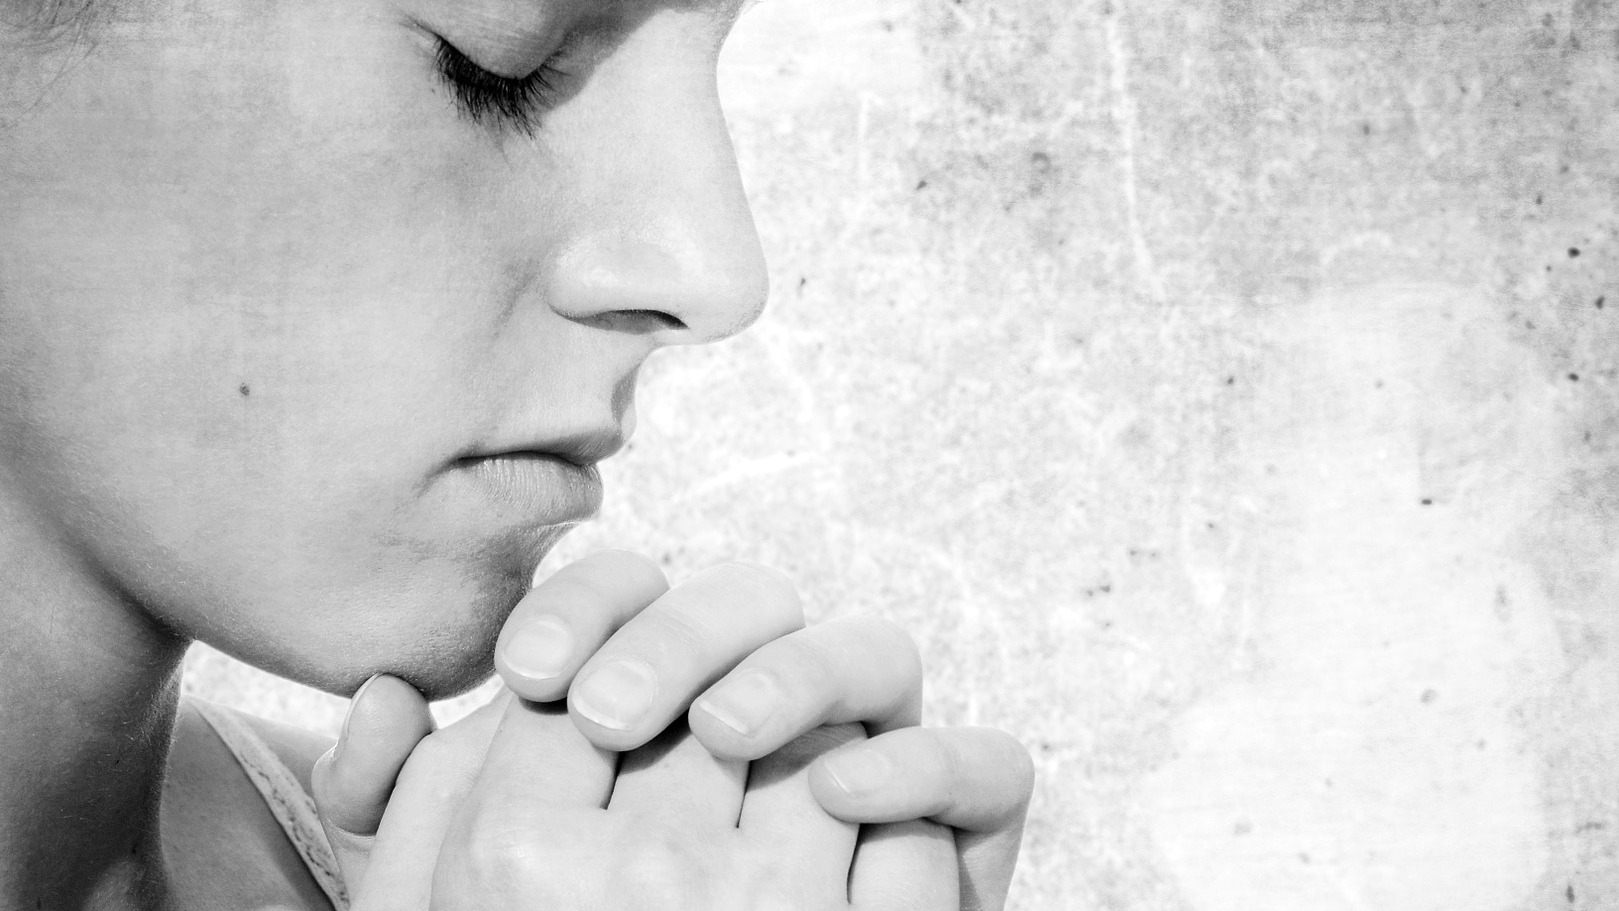 Pour le pape, la prière est "la voie de sortie" de nos "fermetures" (Photo:Pixabay.com)